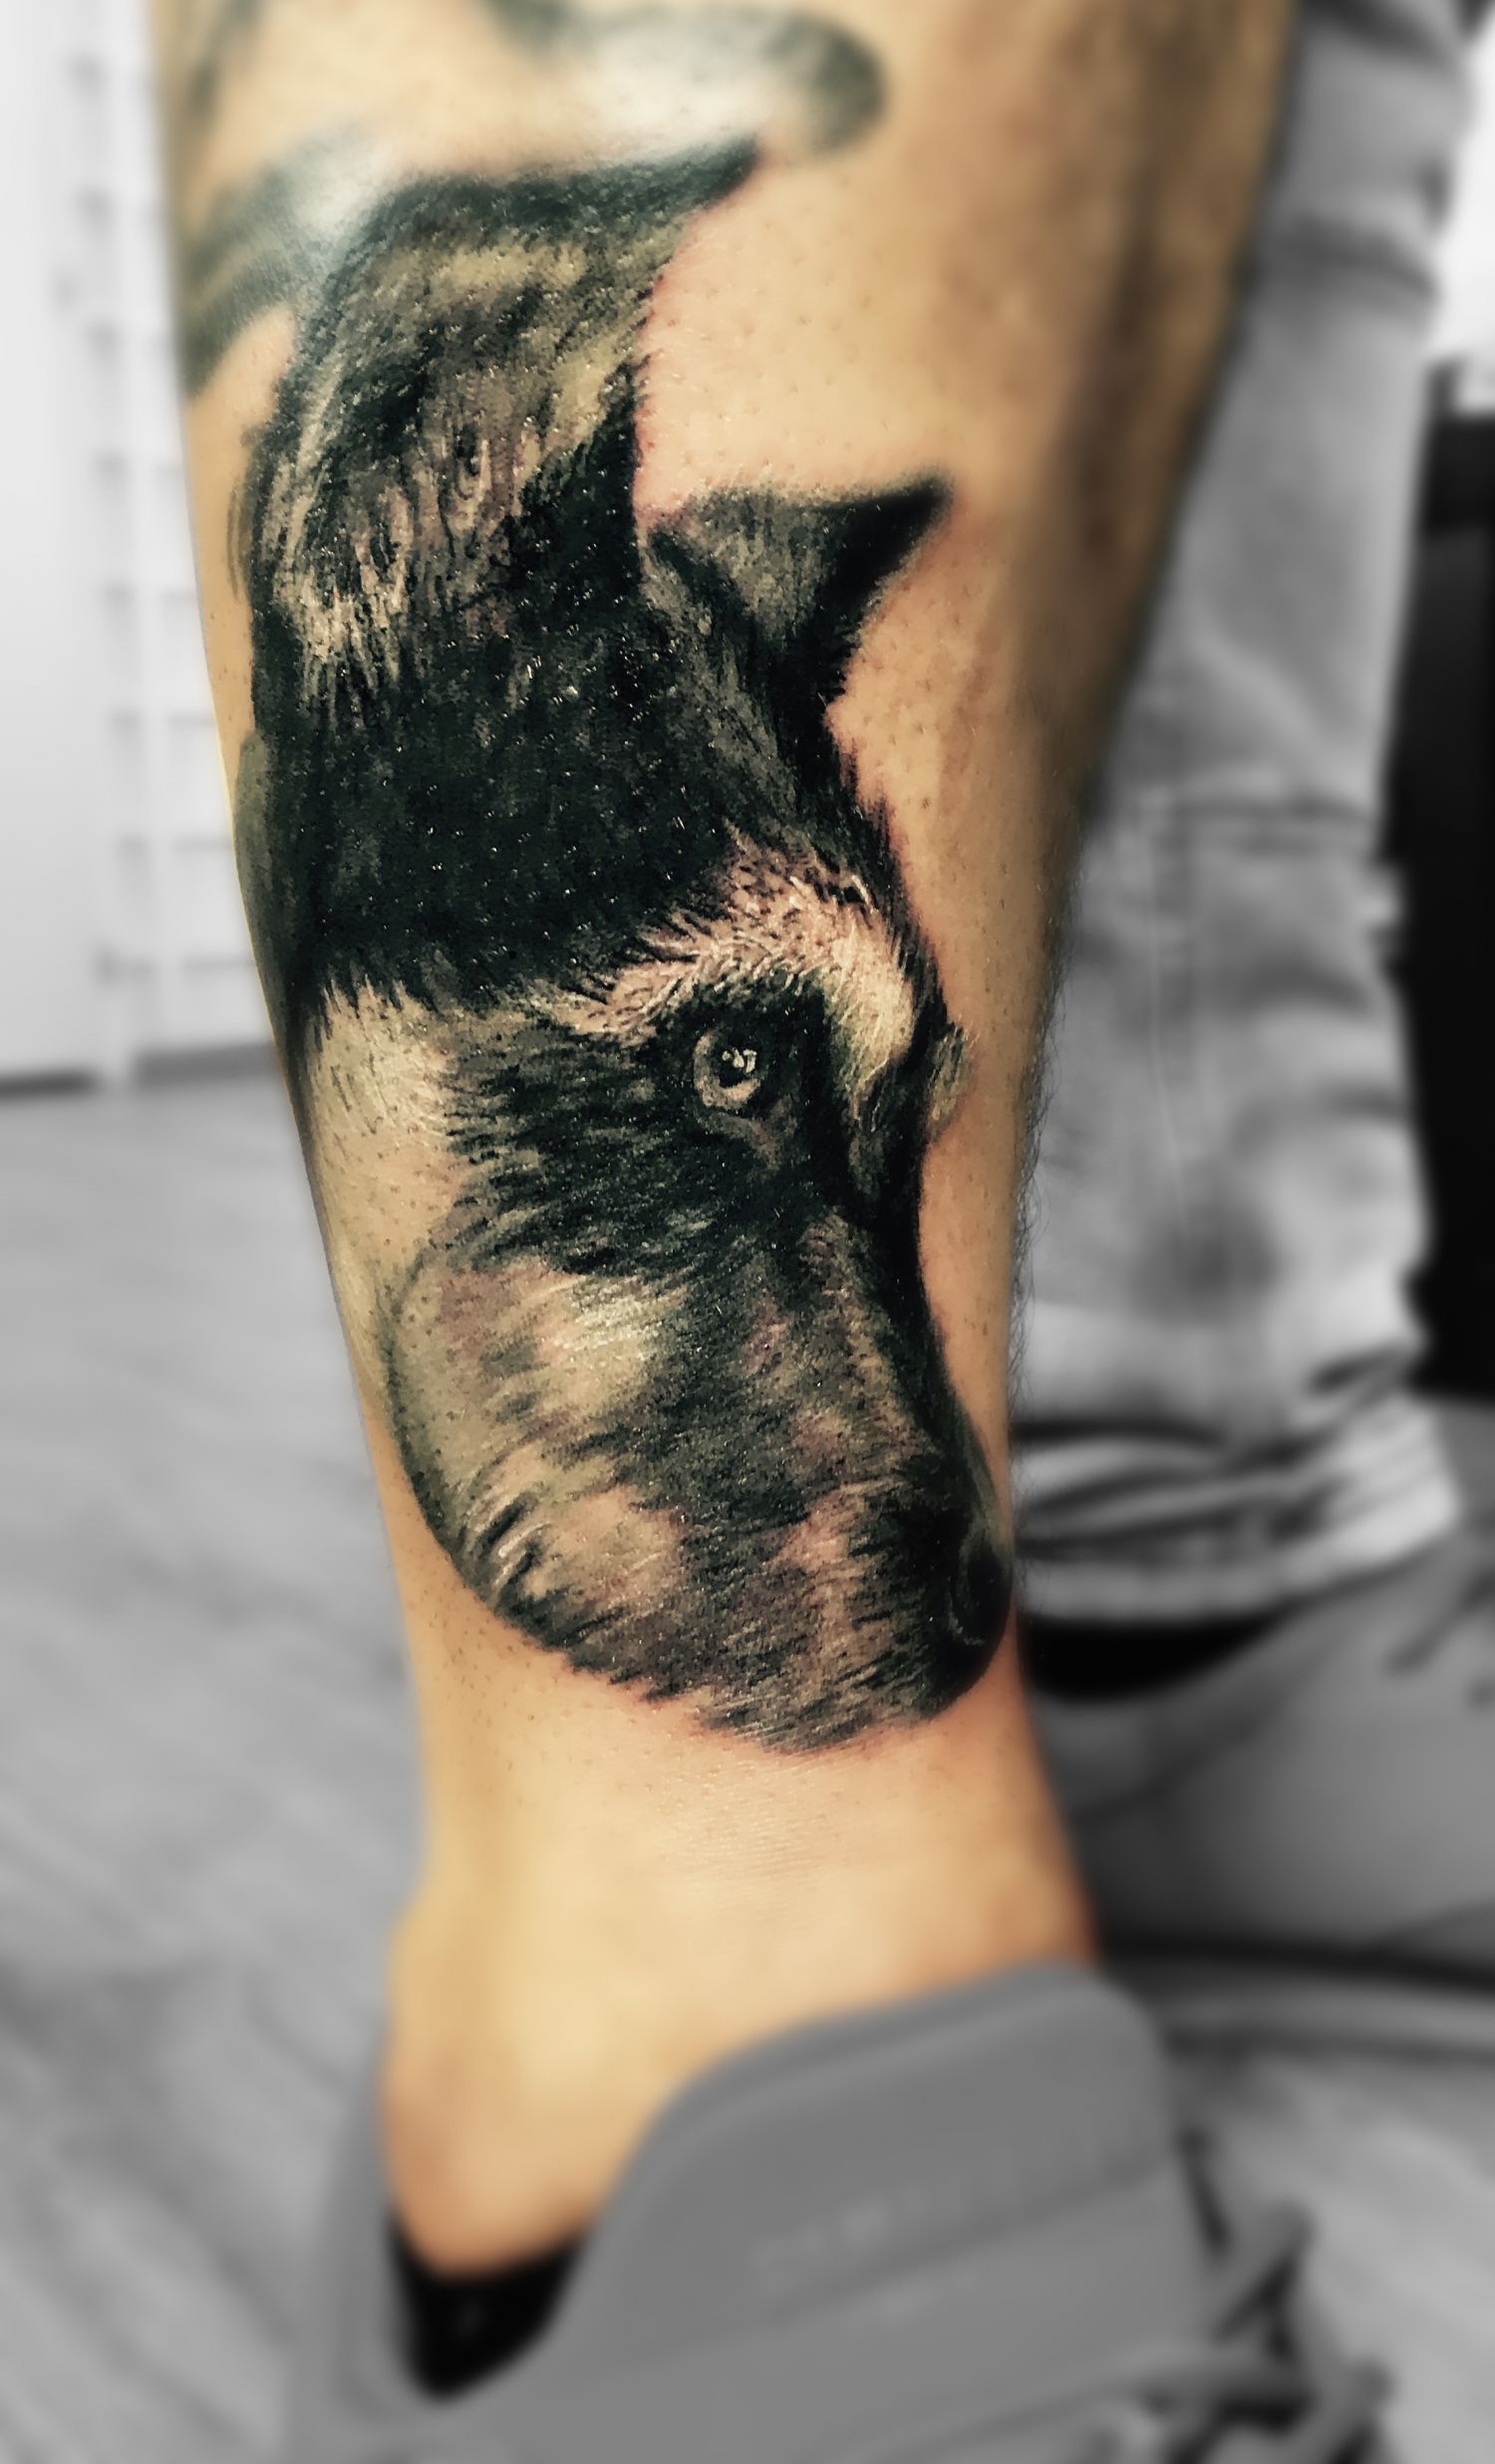 Állat tetoválás, Portré tetoválás, Vádli tetoválás